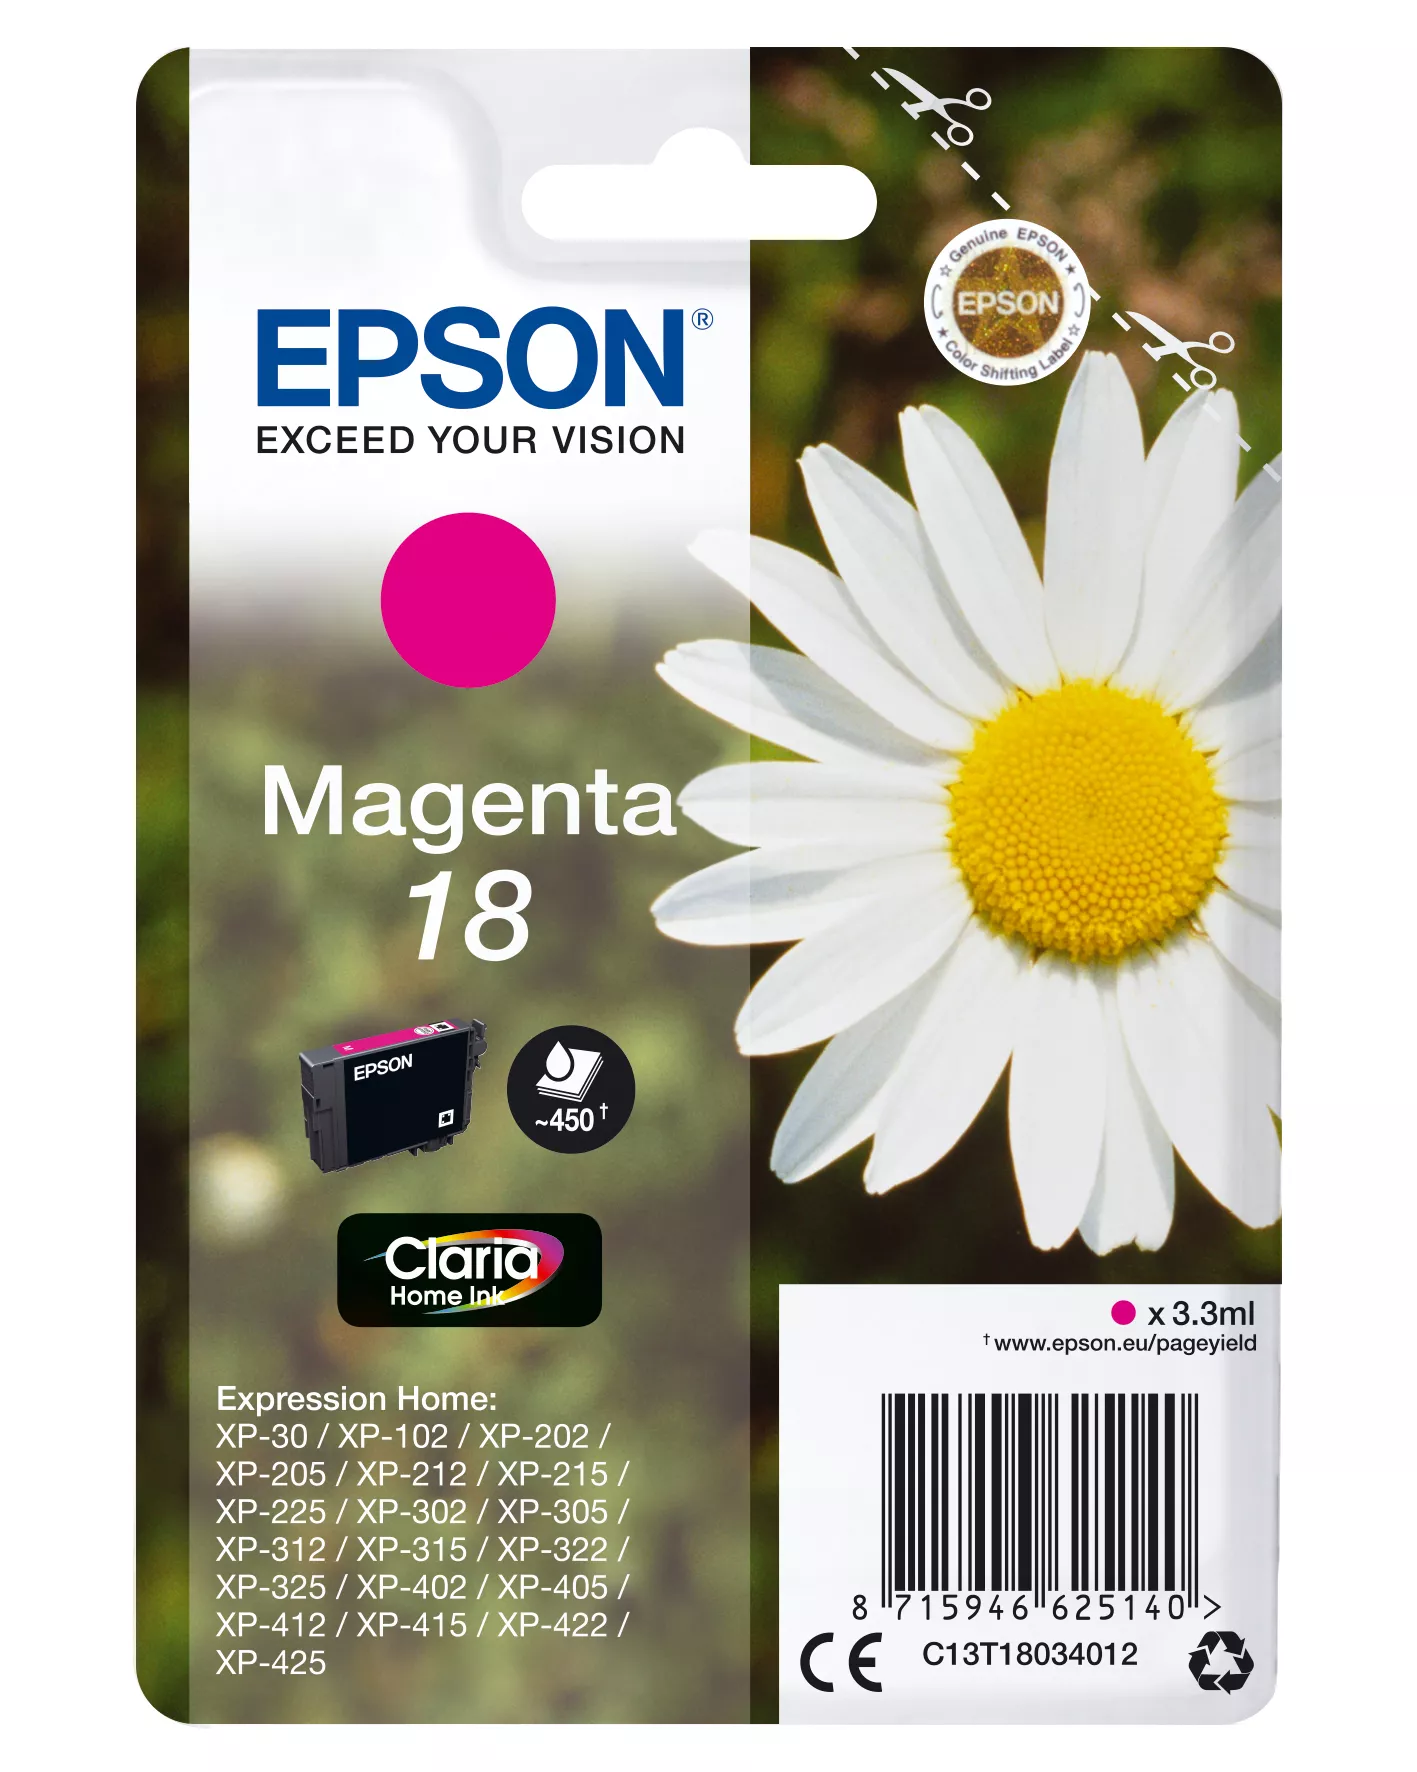 Achat EPSON 18 cartouche dencre magenta capacité standard 3.3ml au meilleur prix